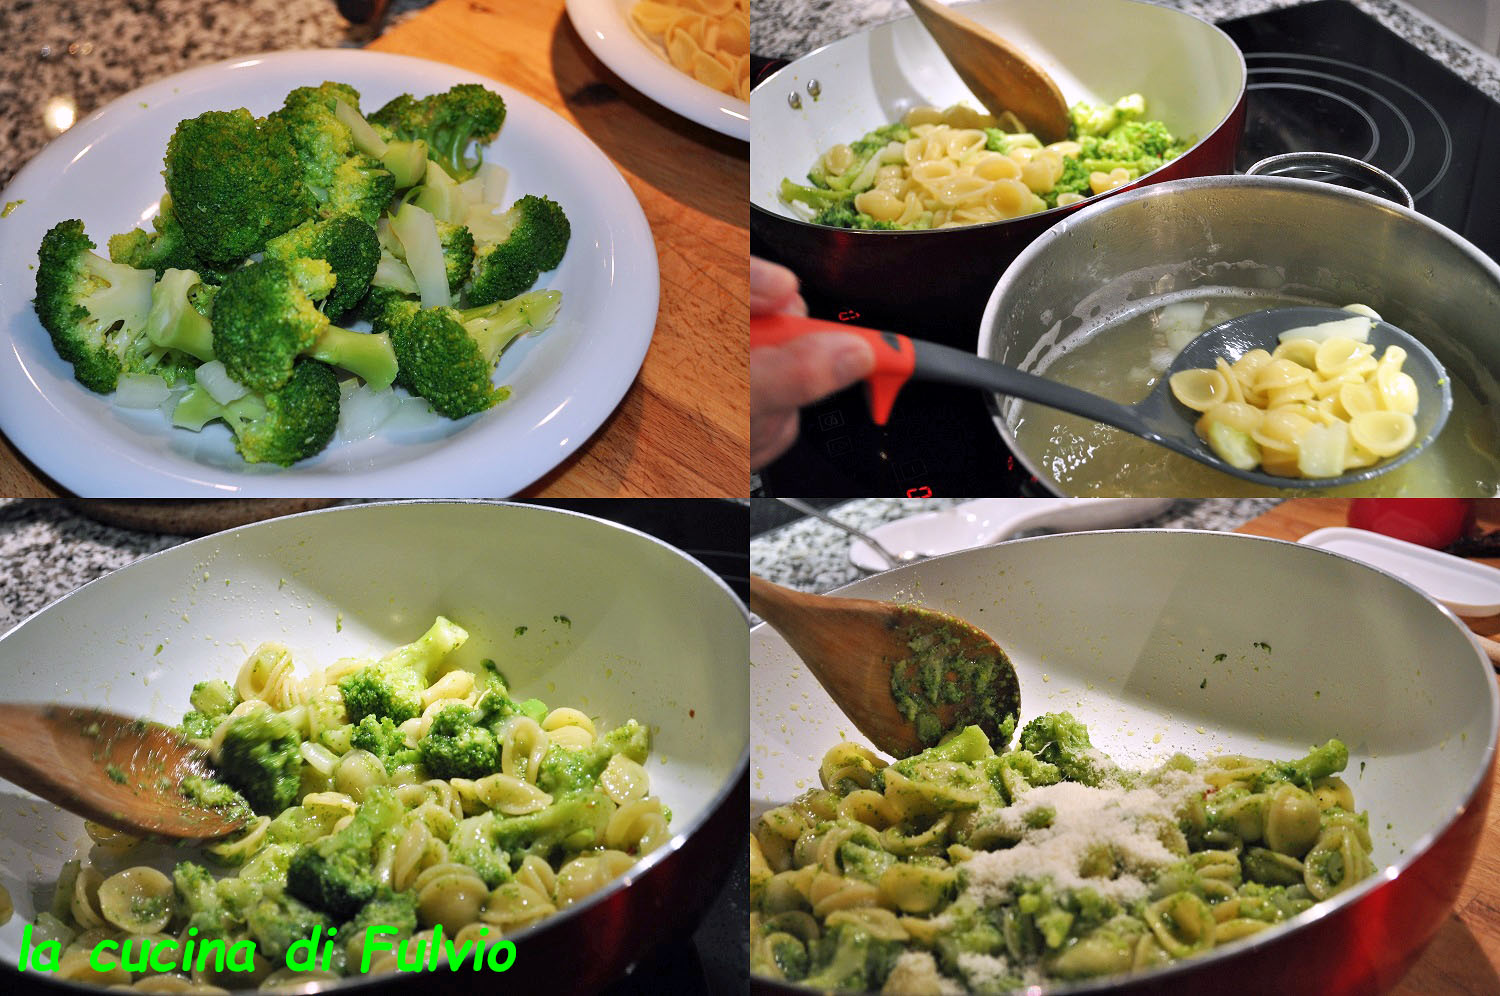 Orecchiette with broccoli